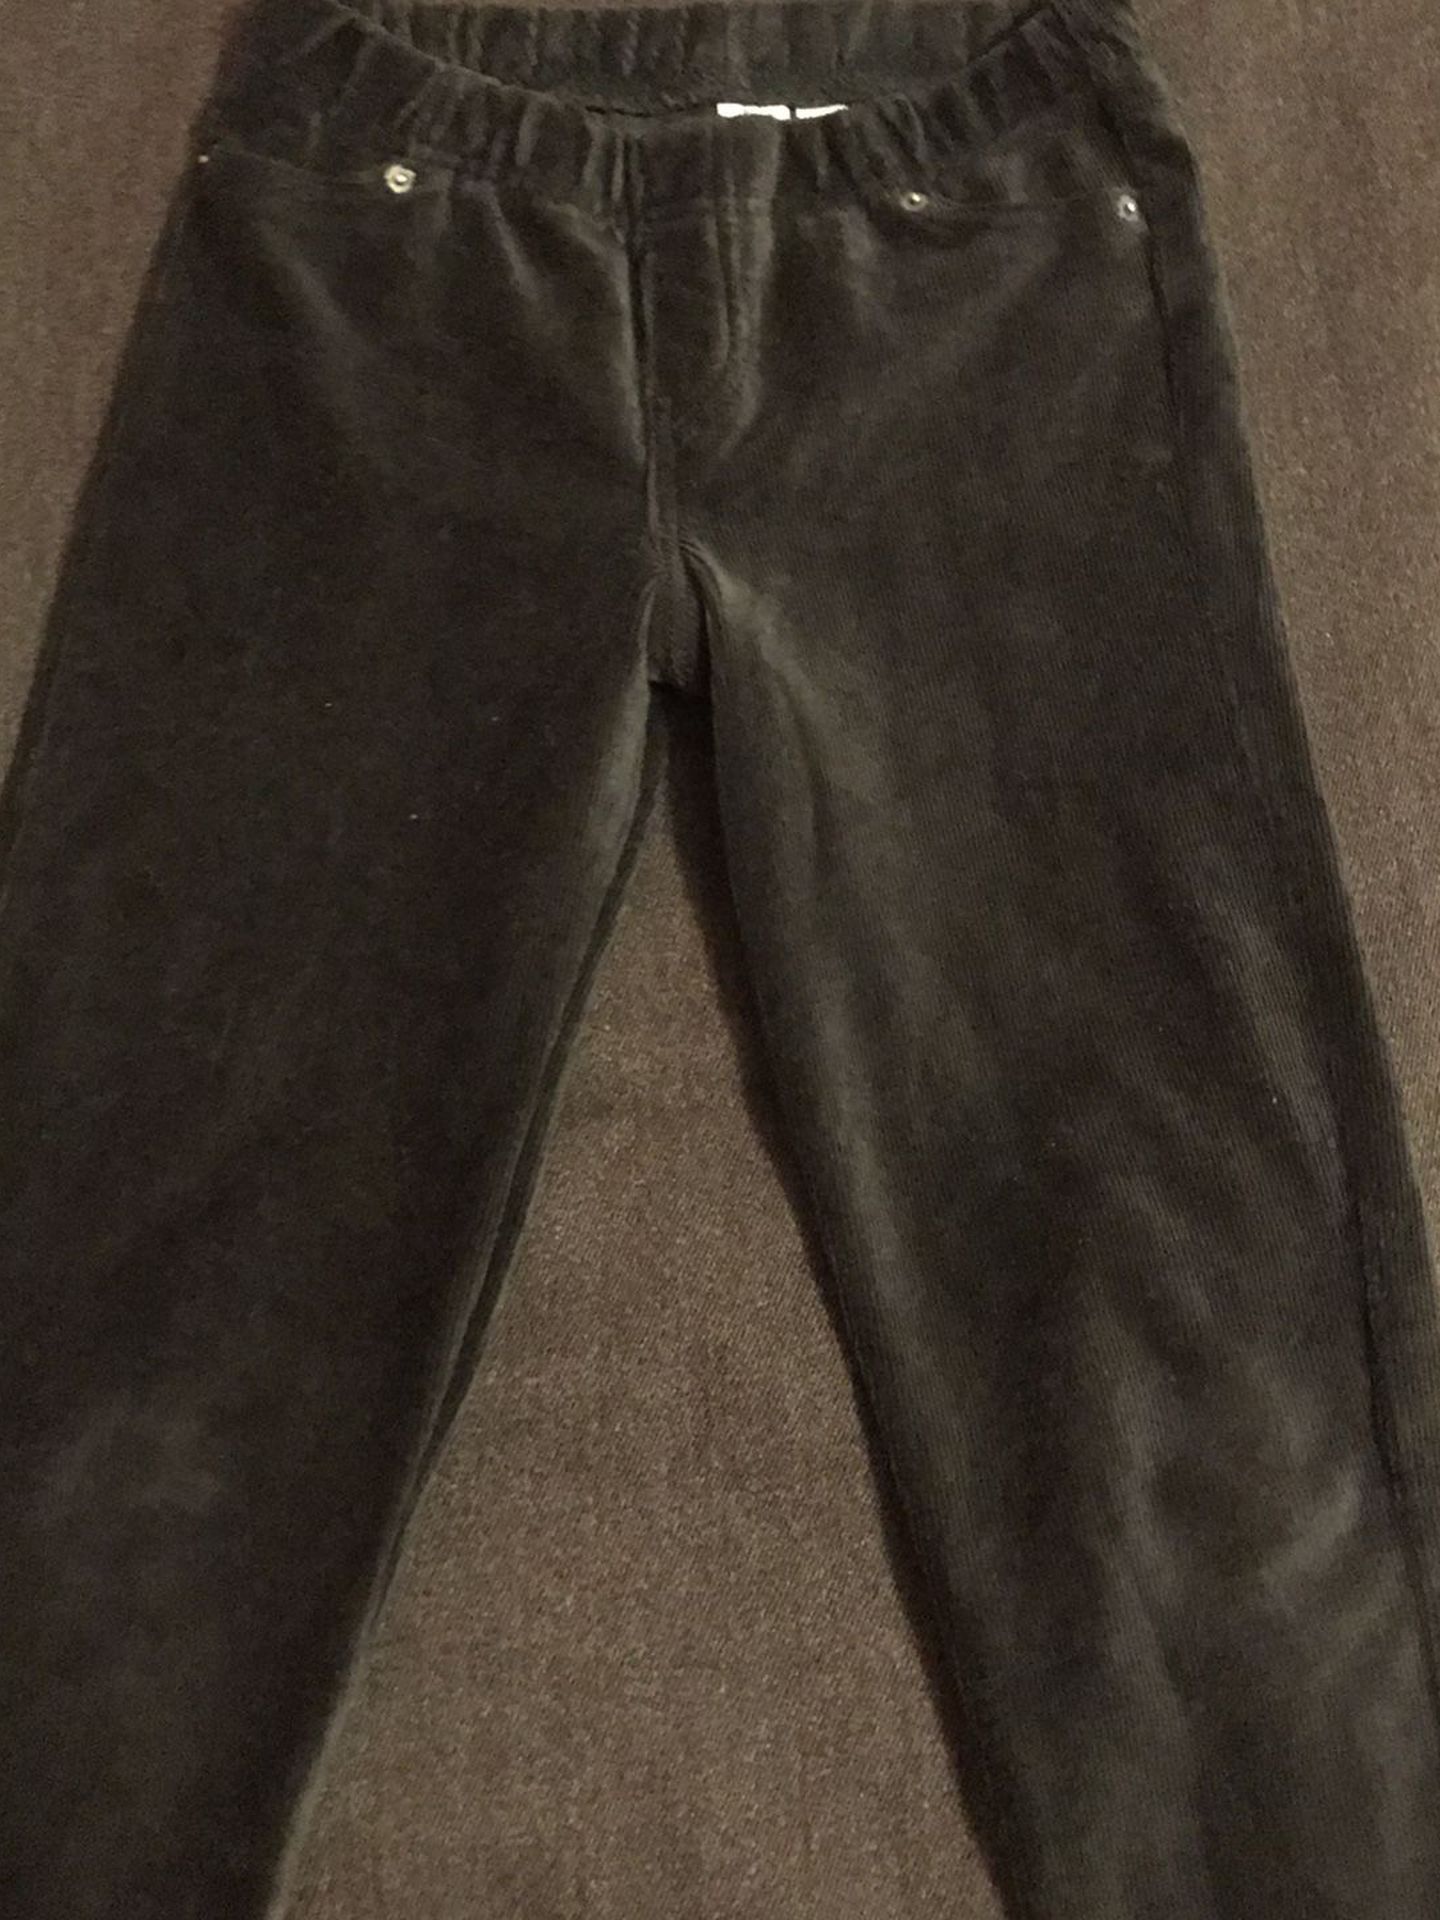 Girl’s Corduroy pants. Size 10/12 - L